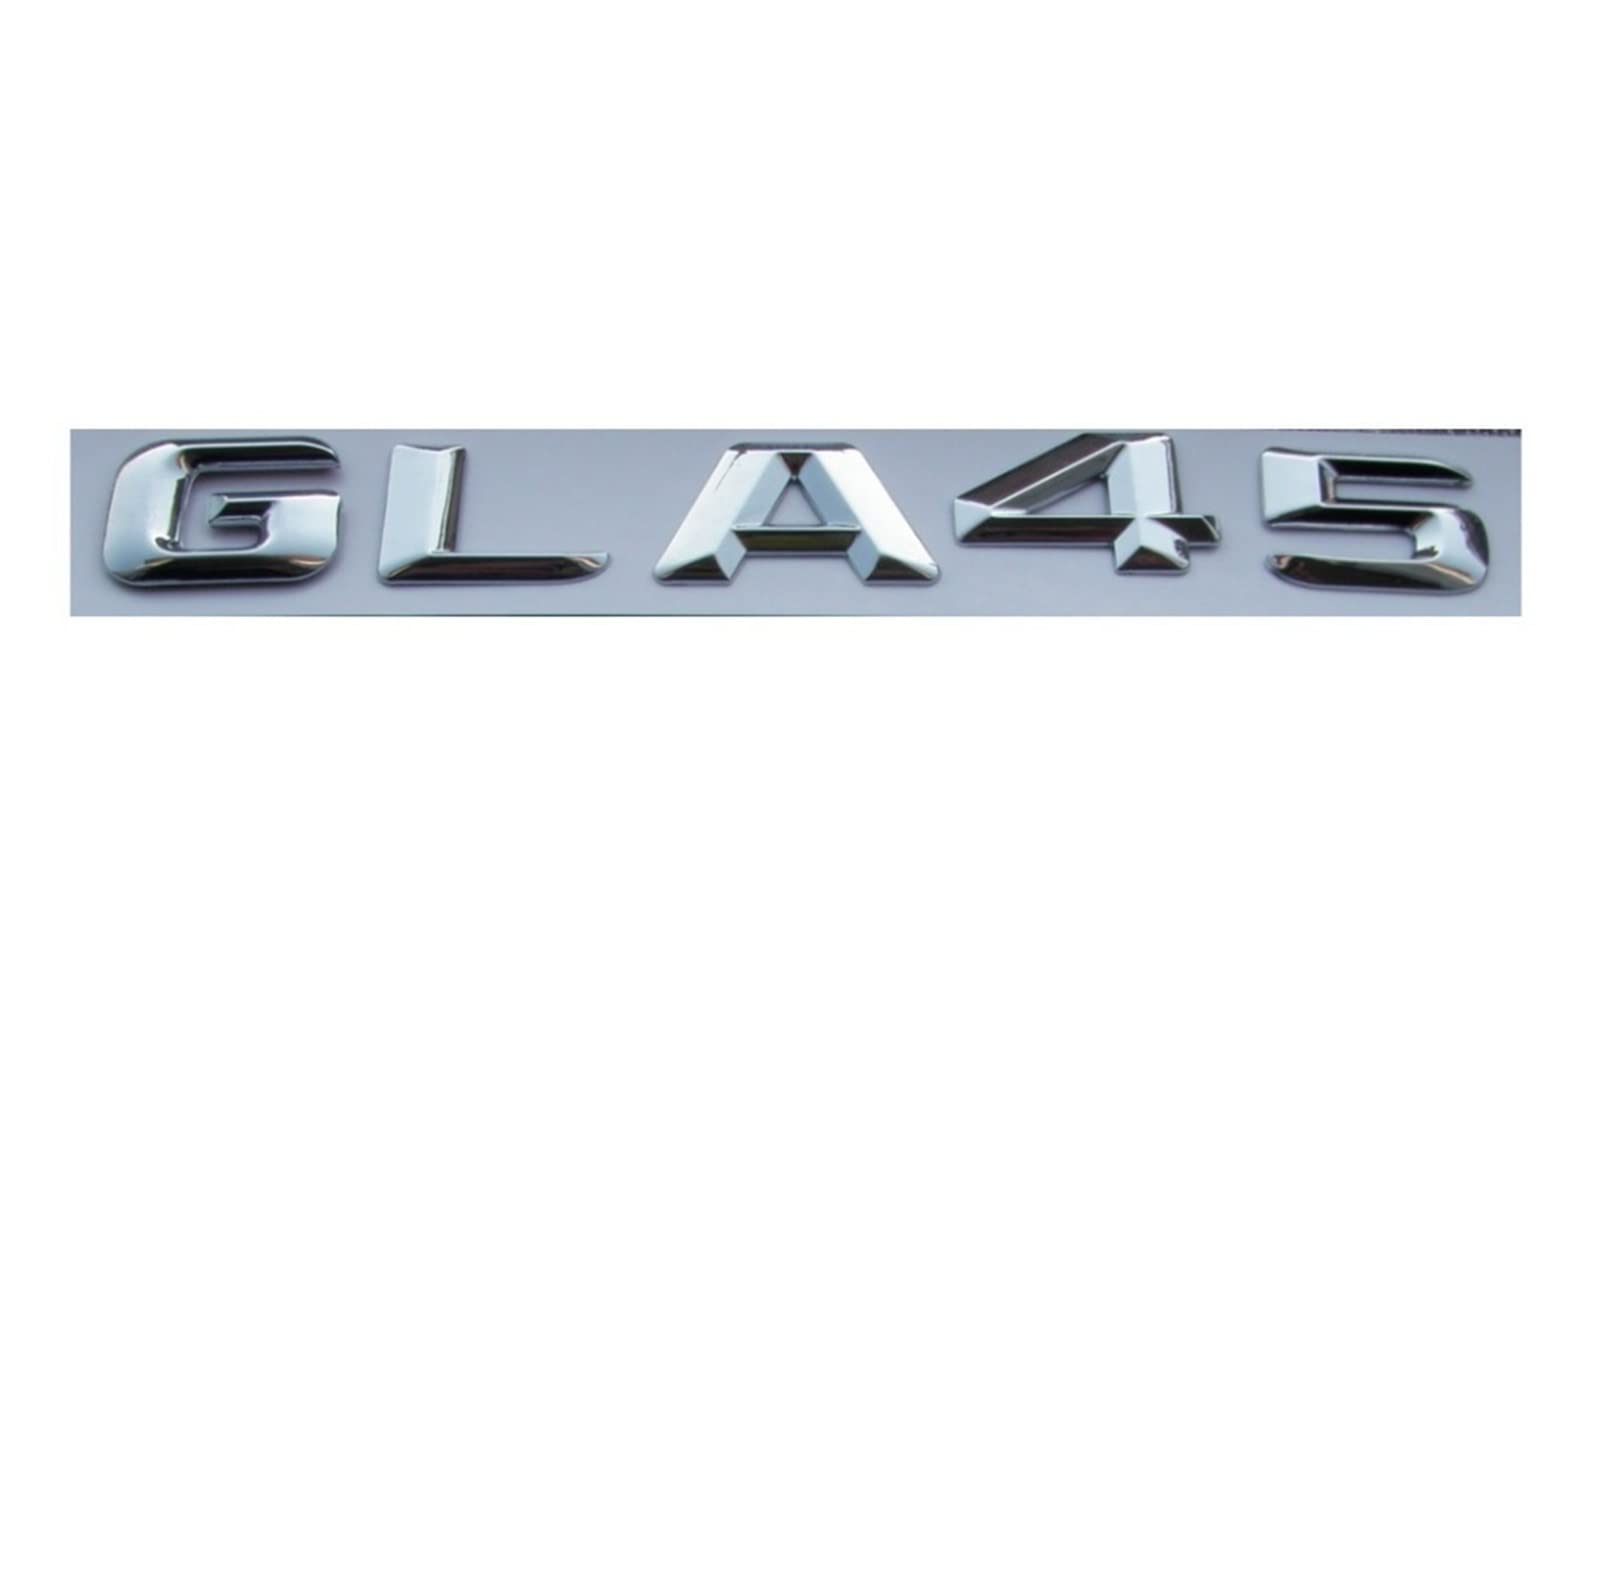 LHYFAGQK Chrom-glänzendes silbernes ABS-Autokofferraum-hintere Zahl-Buchstaben-Wörter-Abzeichen-Emblem-Aufkleber-Aufkleber, kompatibel mit Mercedes-Benz GLA45 AMG Abzeichen Autoaufkleber von LHYFAGQK